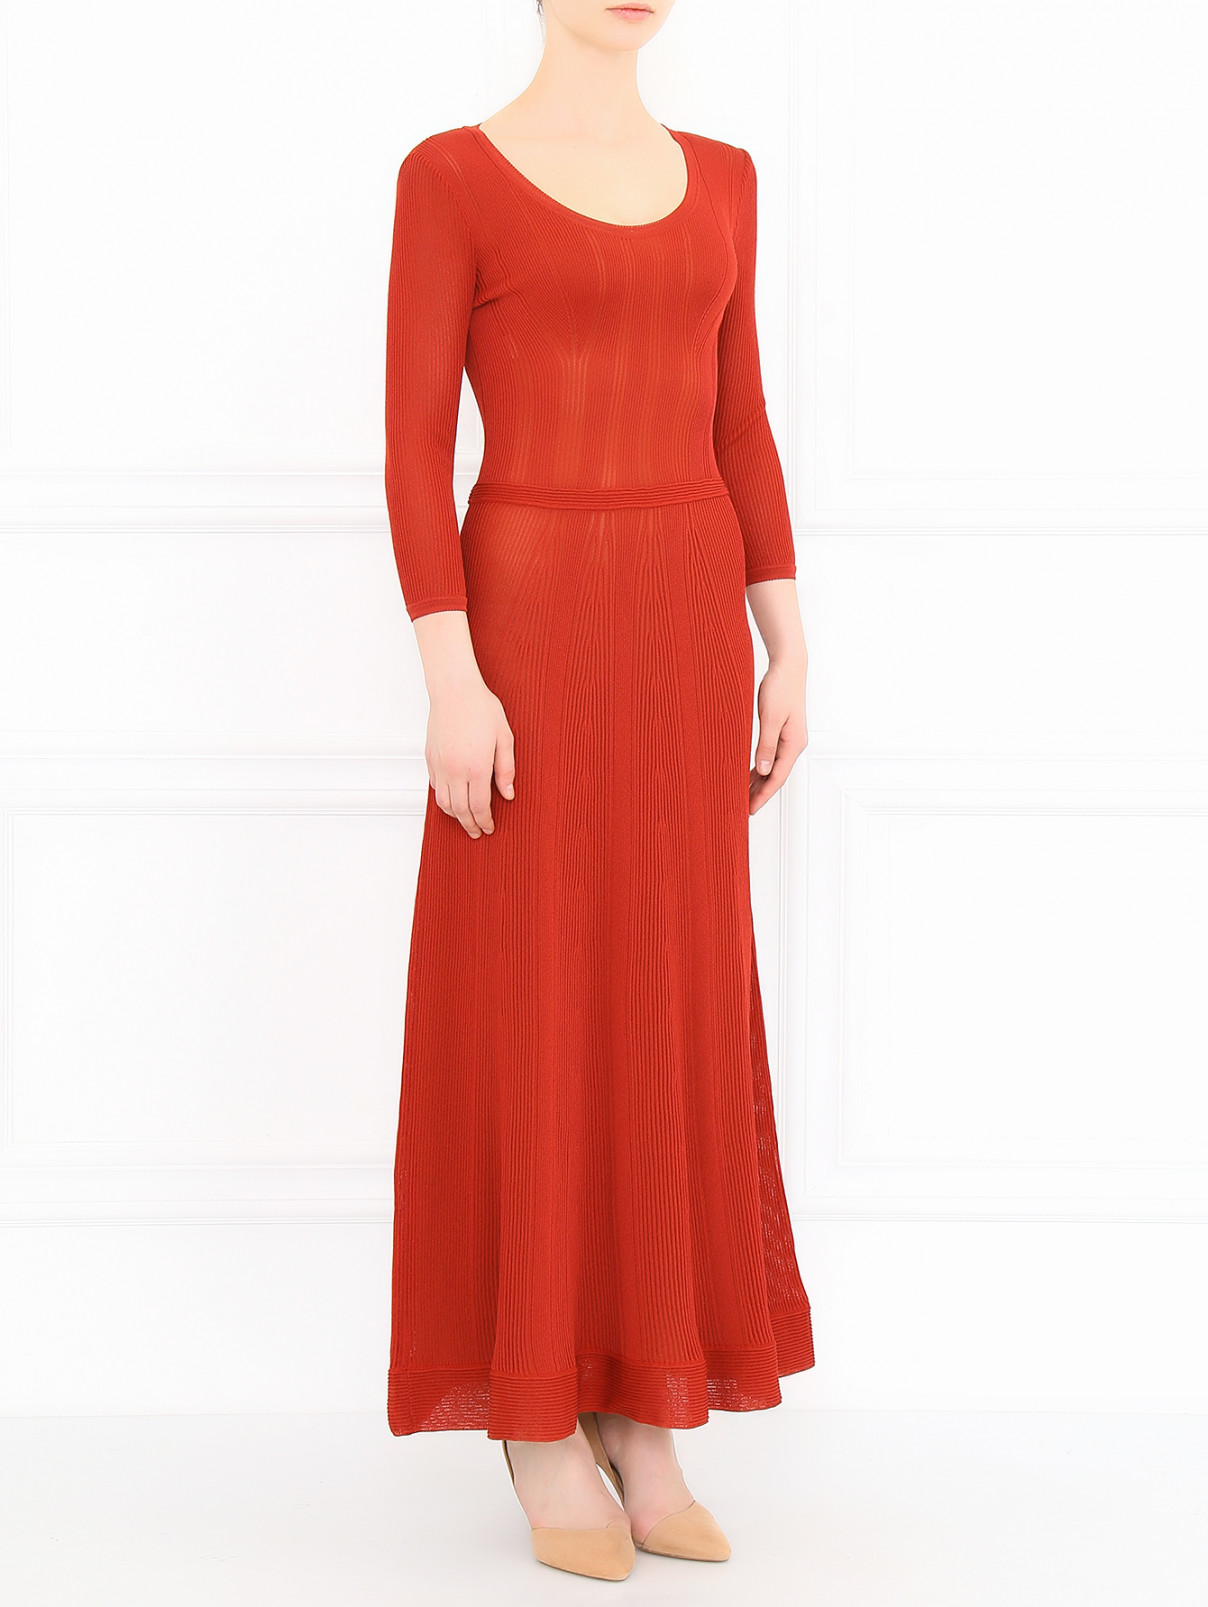 Платье-макси с рукавами 3/4 Alberta Ferretti  –  Модель Общий вид  – Цвет:  Красный